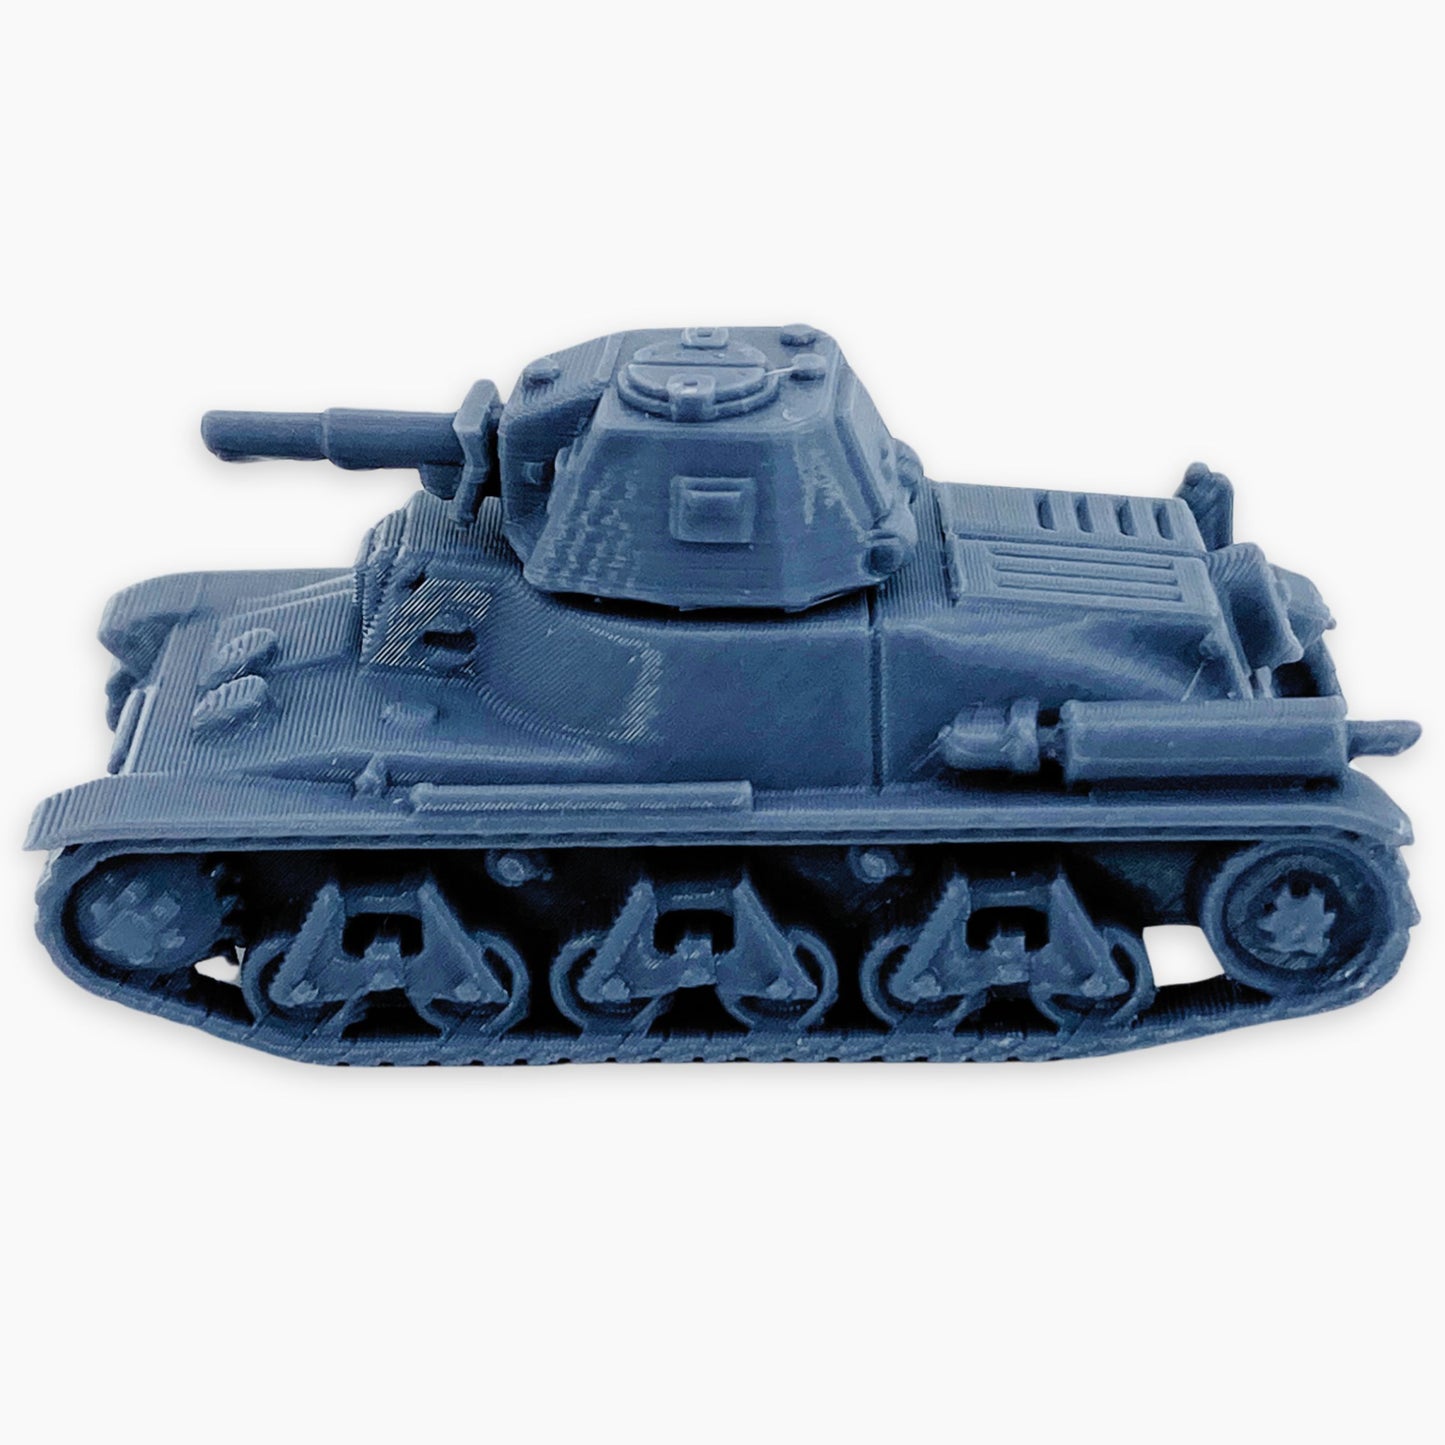 Panzerkampfwagen 38H 735(f) (spare track wheel)